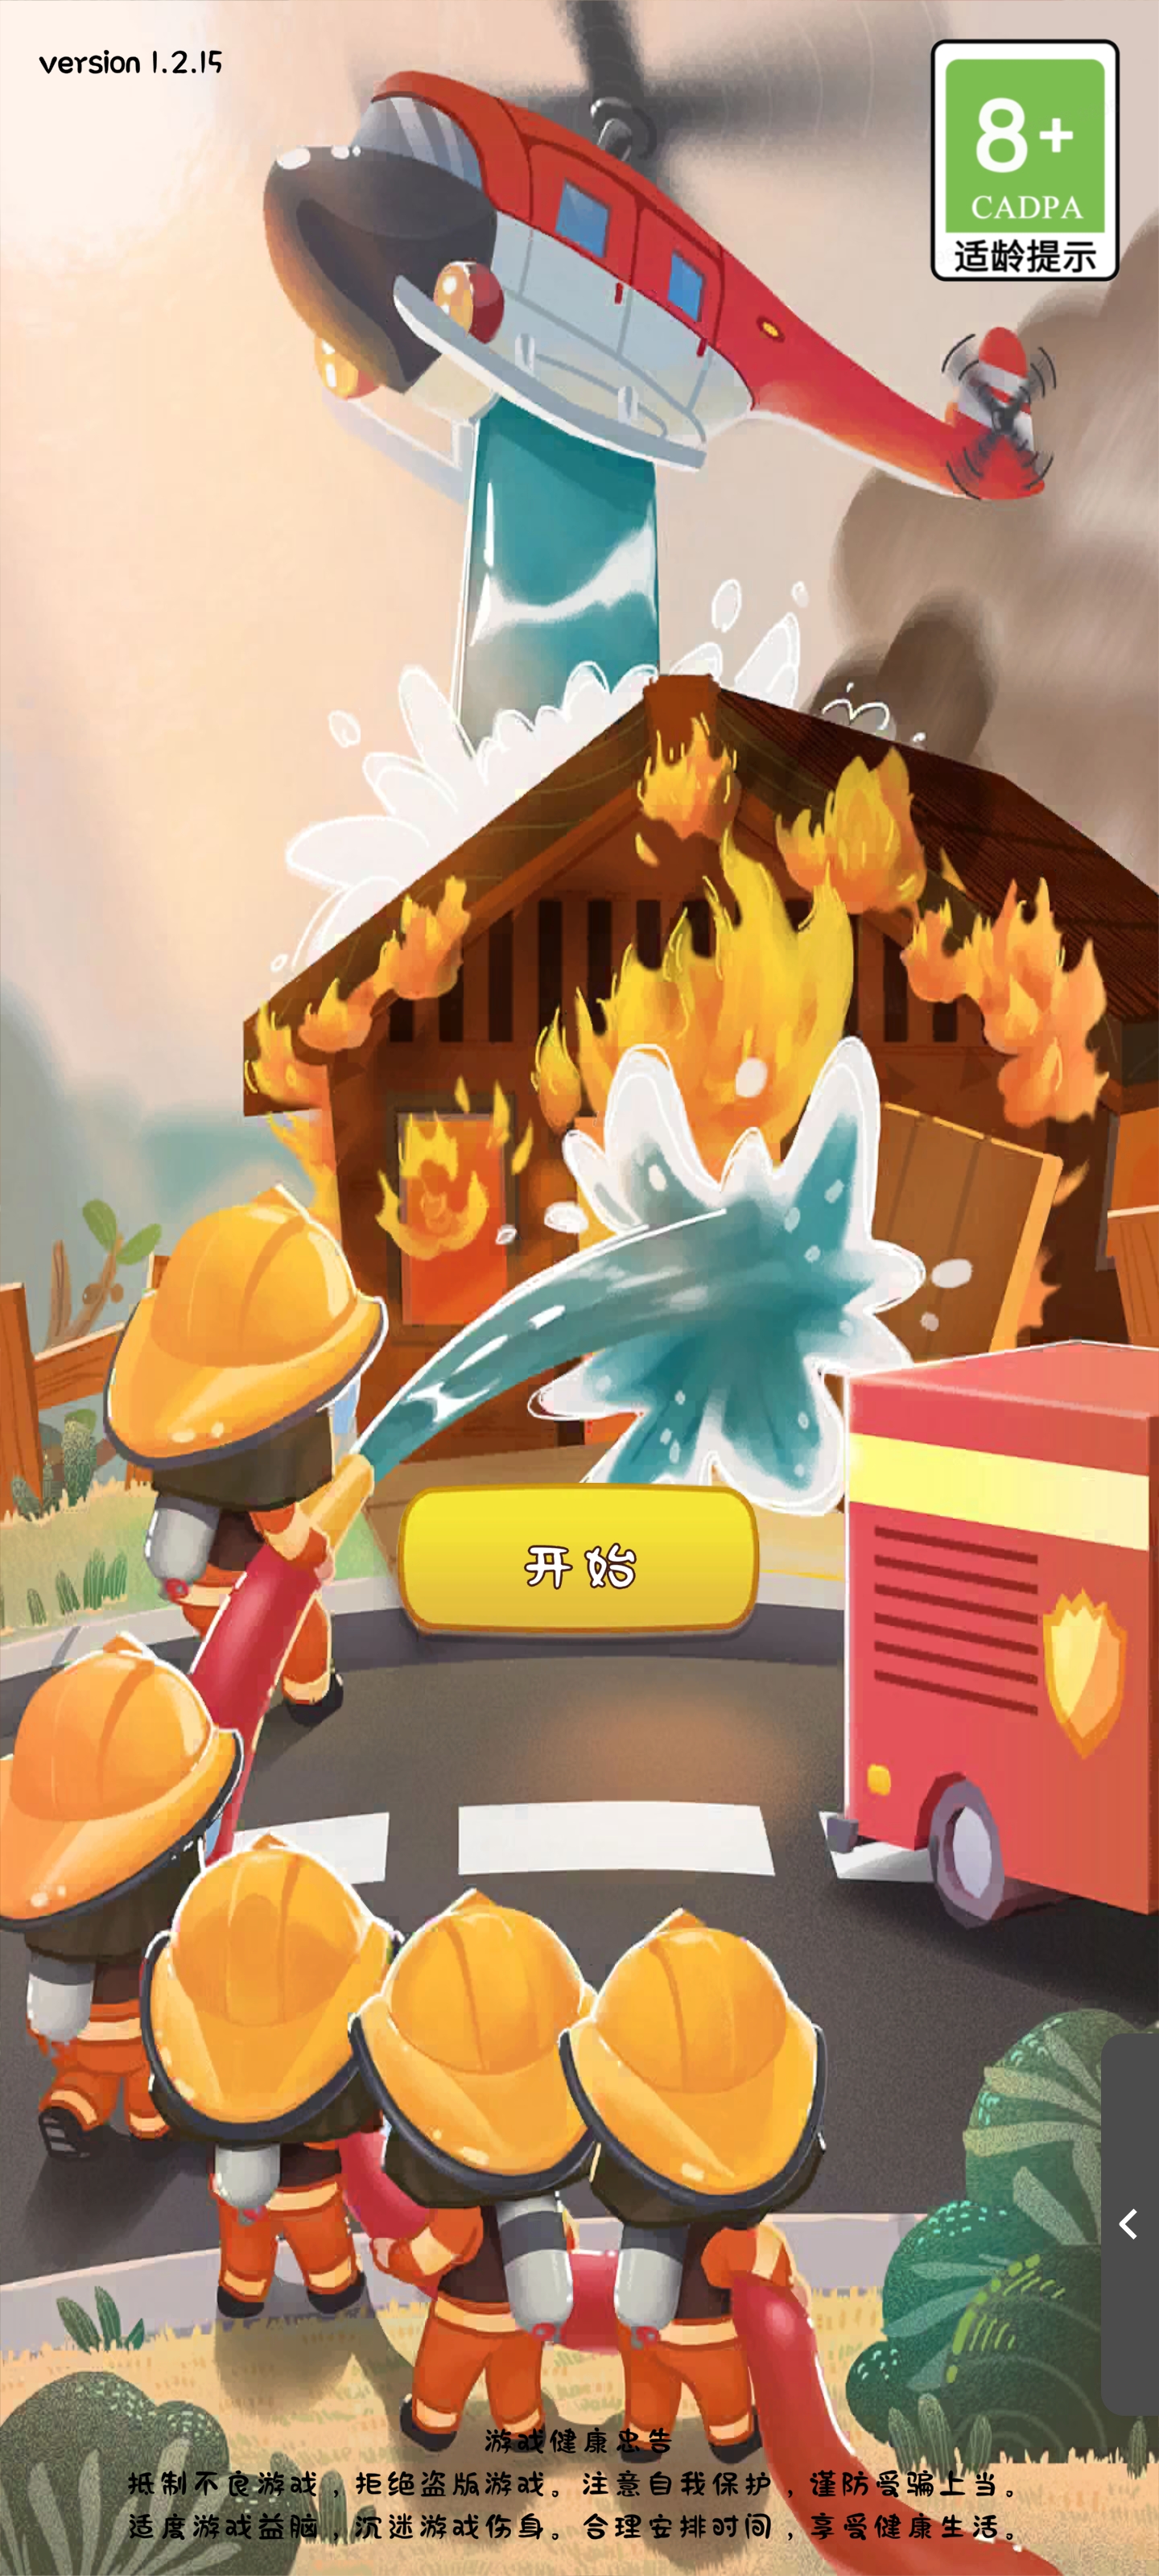 【游戏推荐】烈火中的守护者，消防局的静默力量